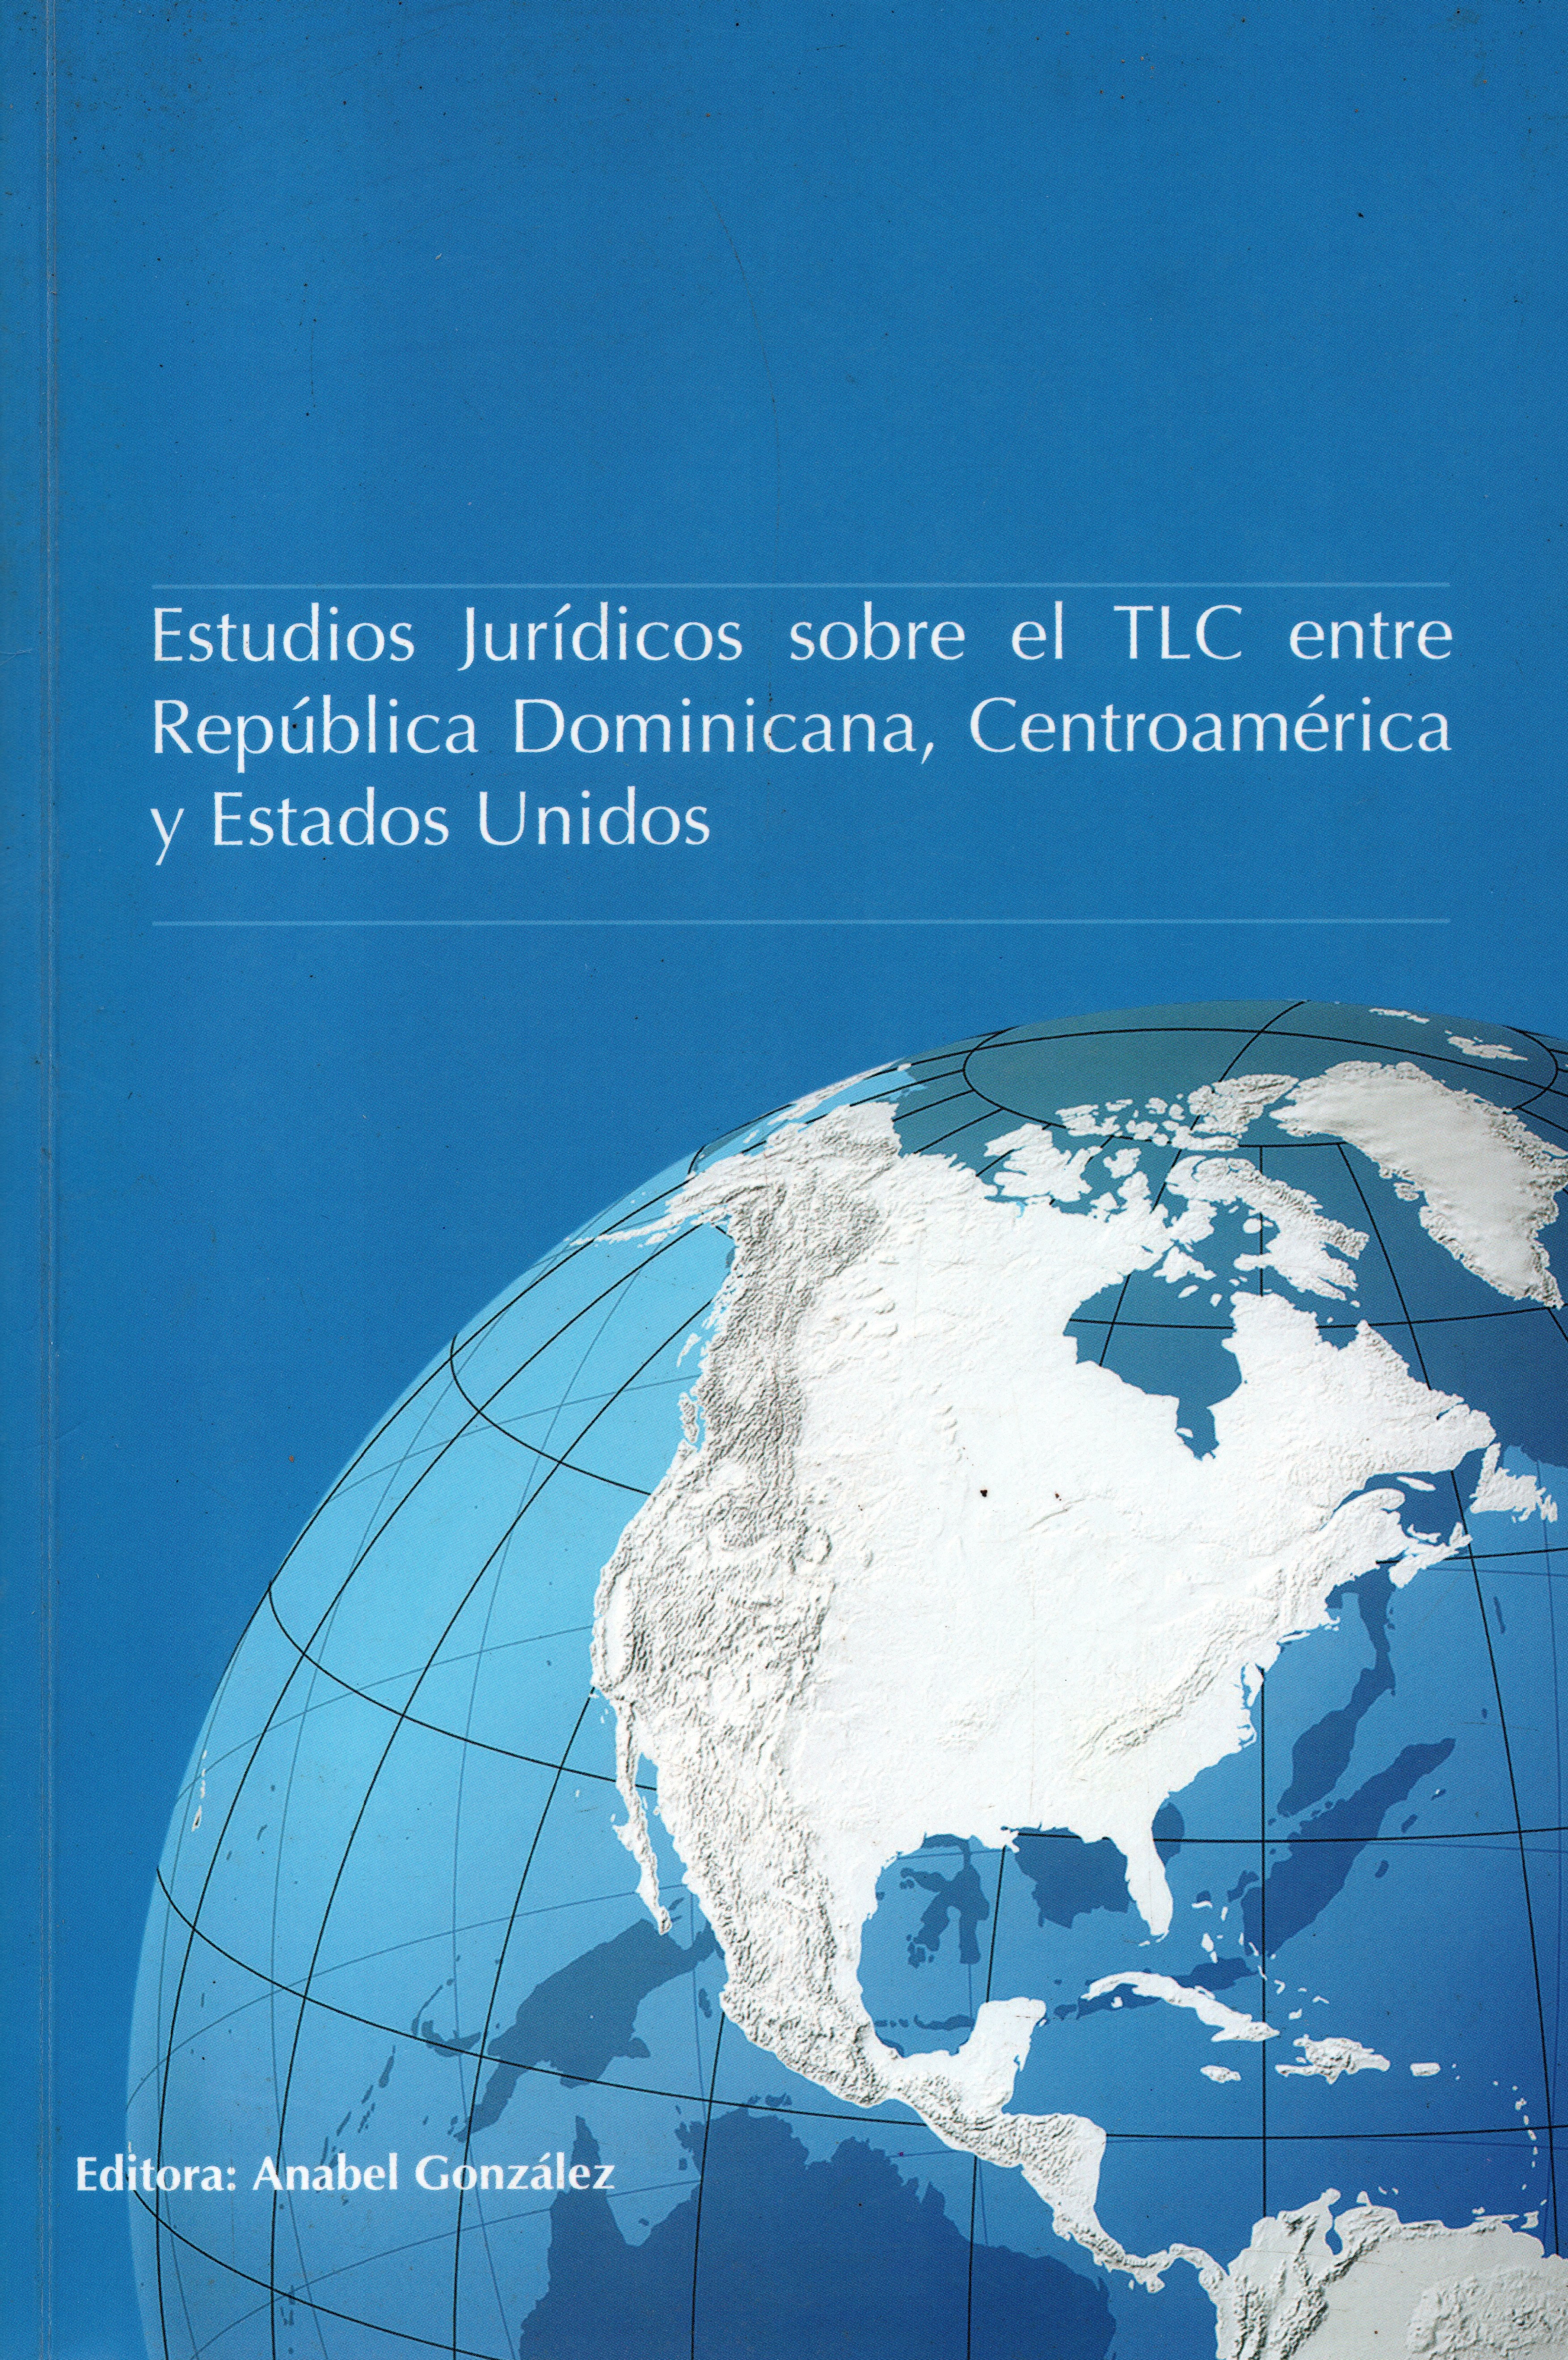 Estudios jurídicos sobre el TLC entre República Dominicana , Centroamérica y Estados Unidos.